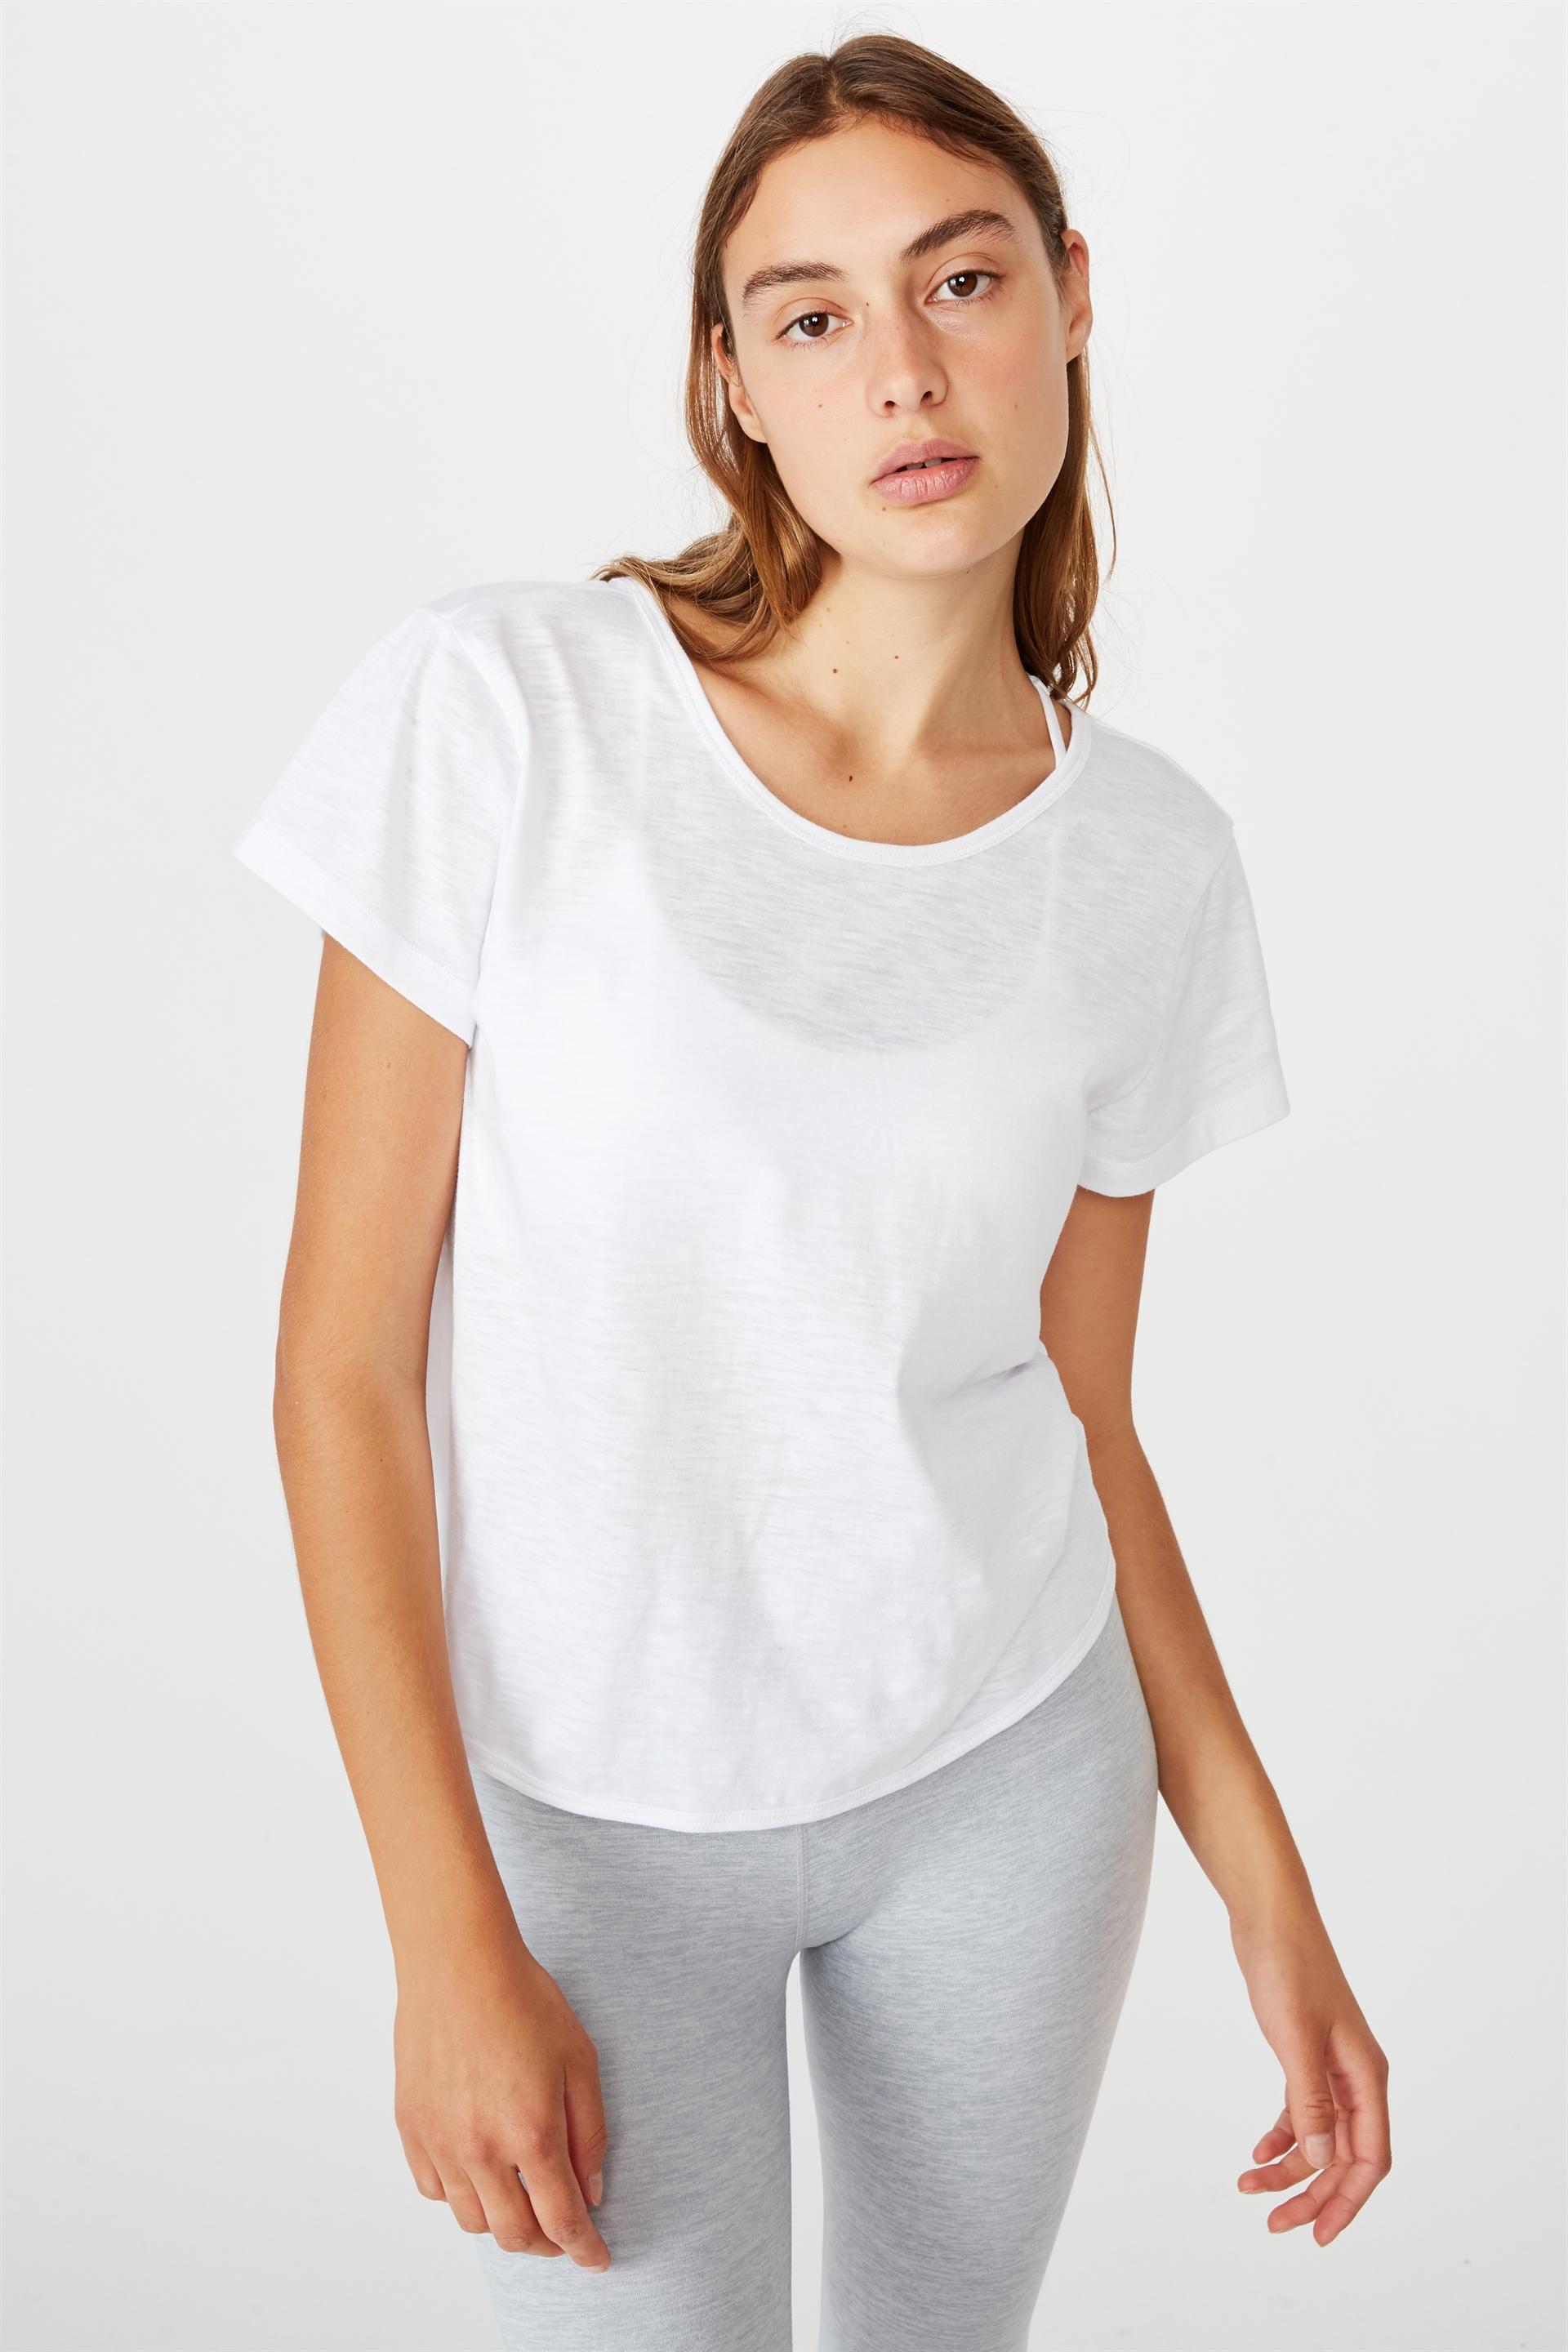 Lifestyle twist back tshirt -white Cotton On T-Shirts | Superbalist.com